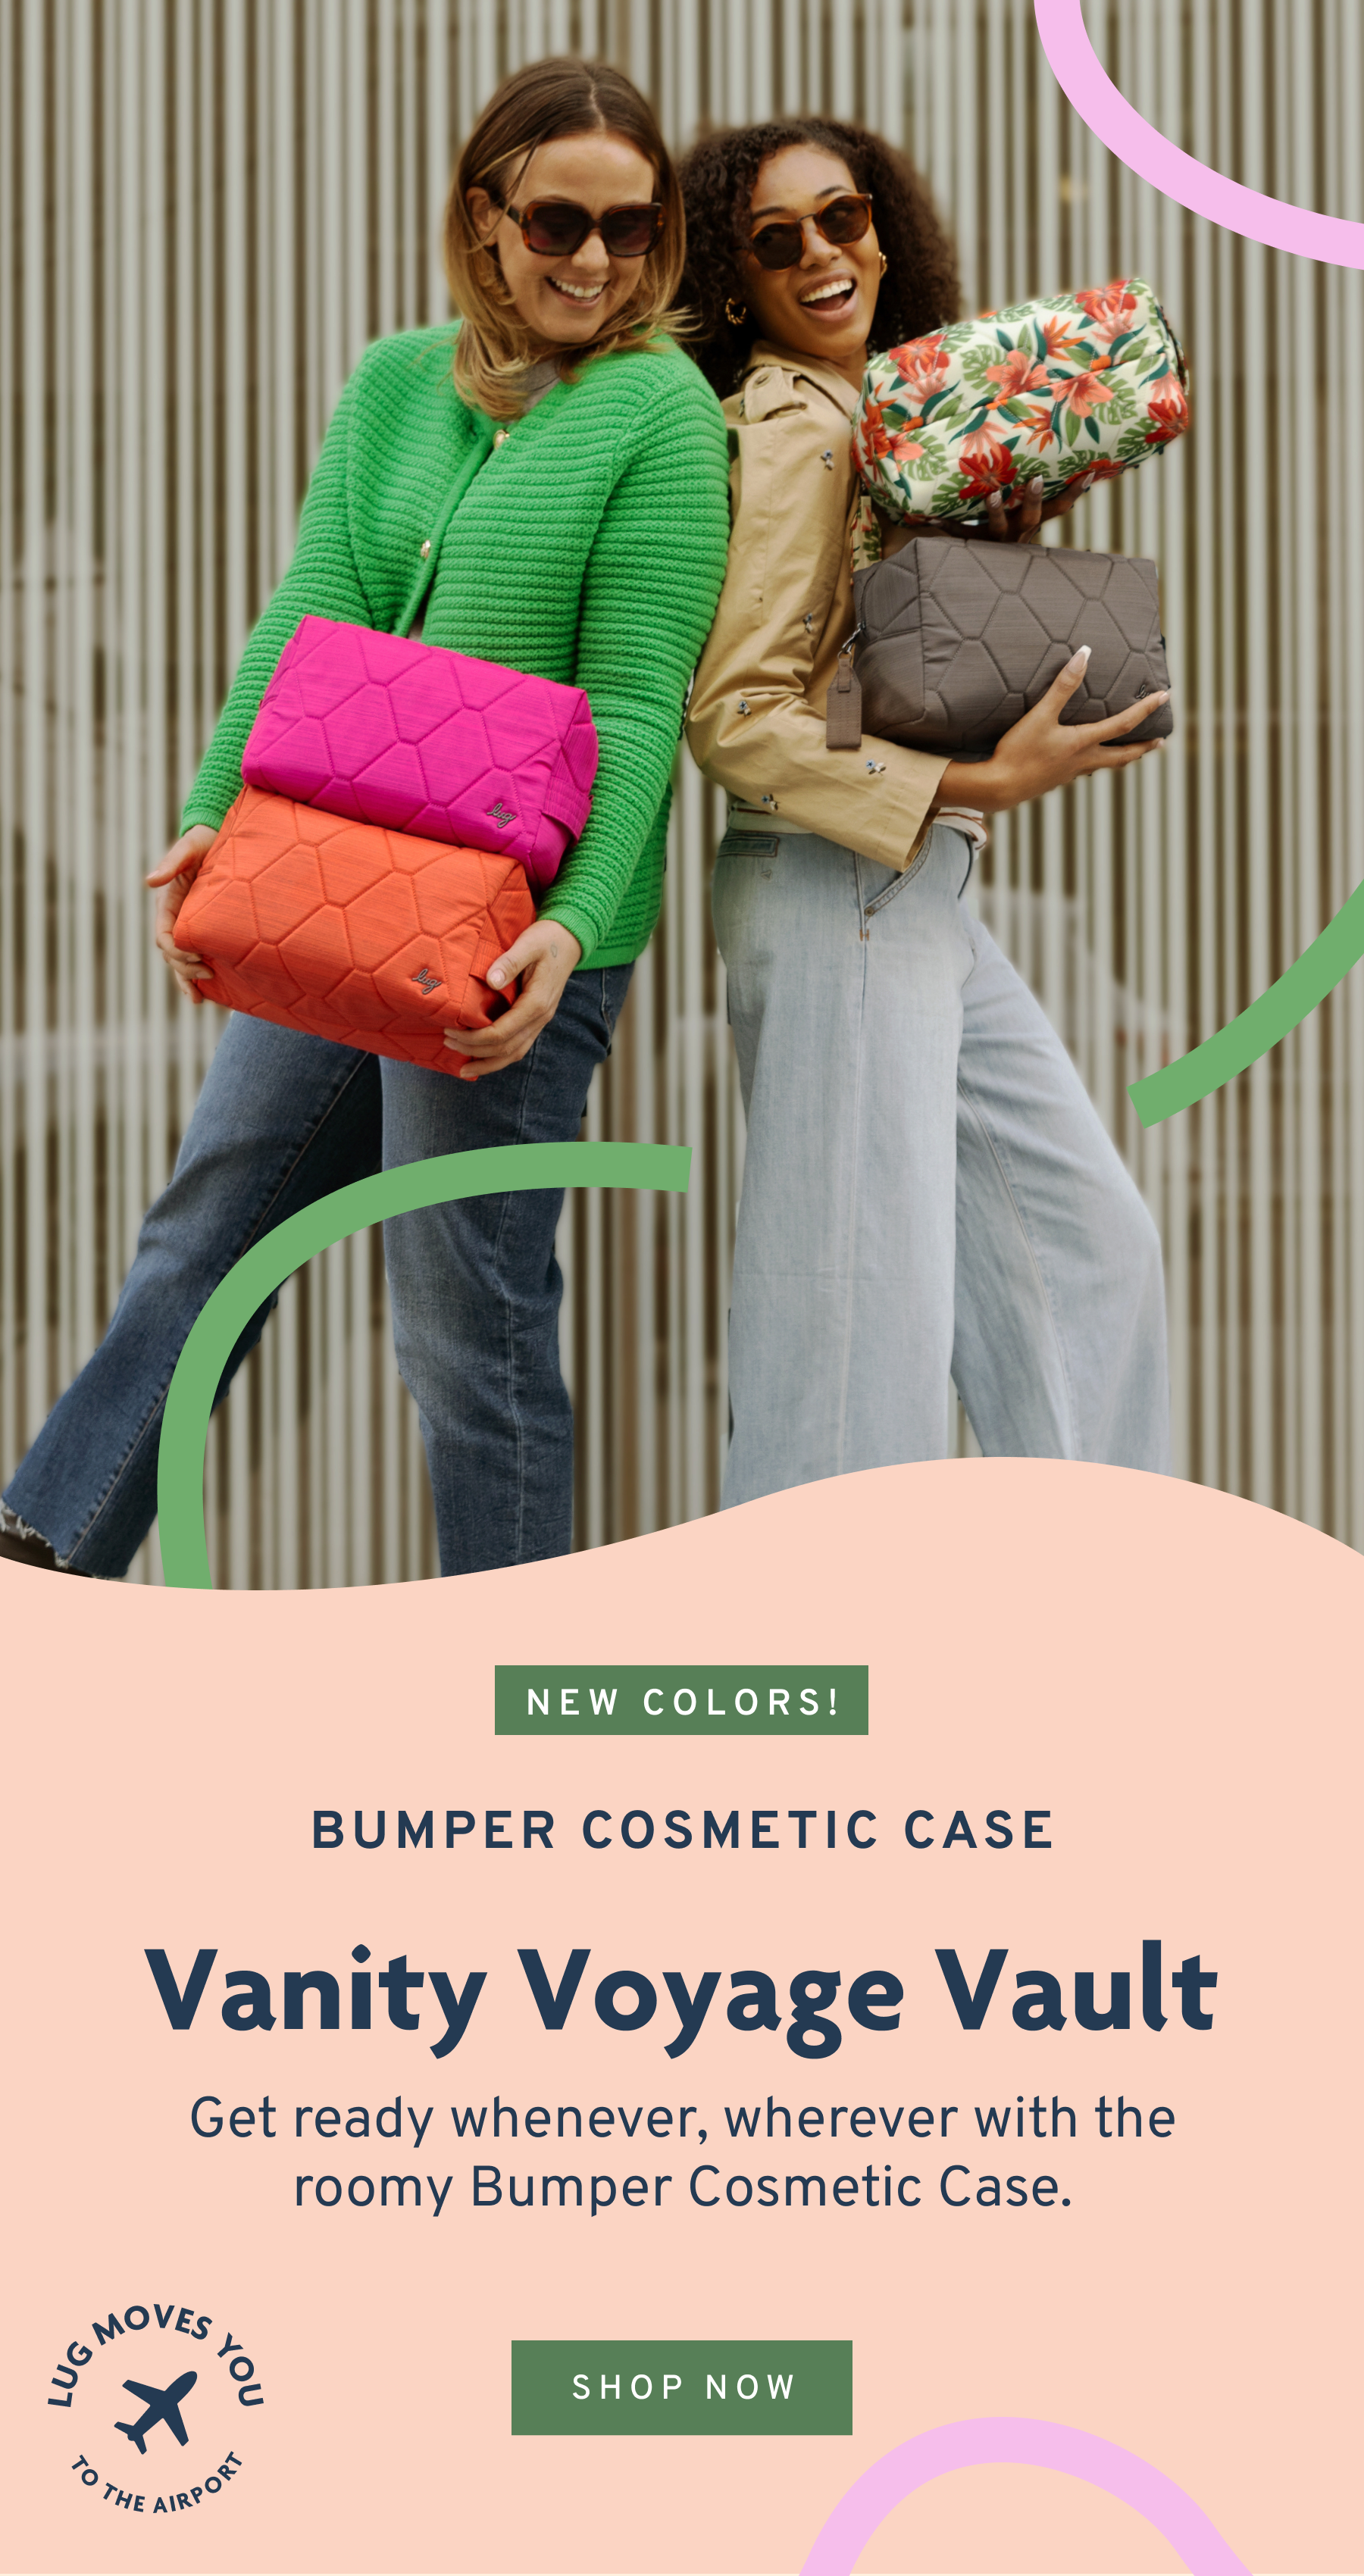 Bumper cosmetic case